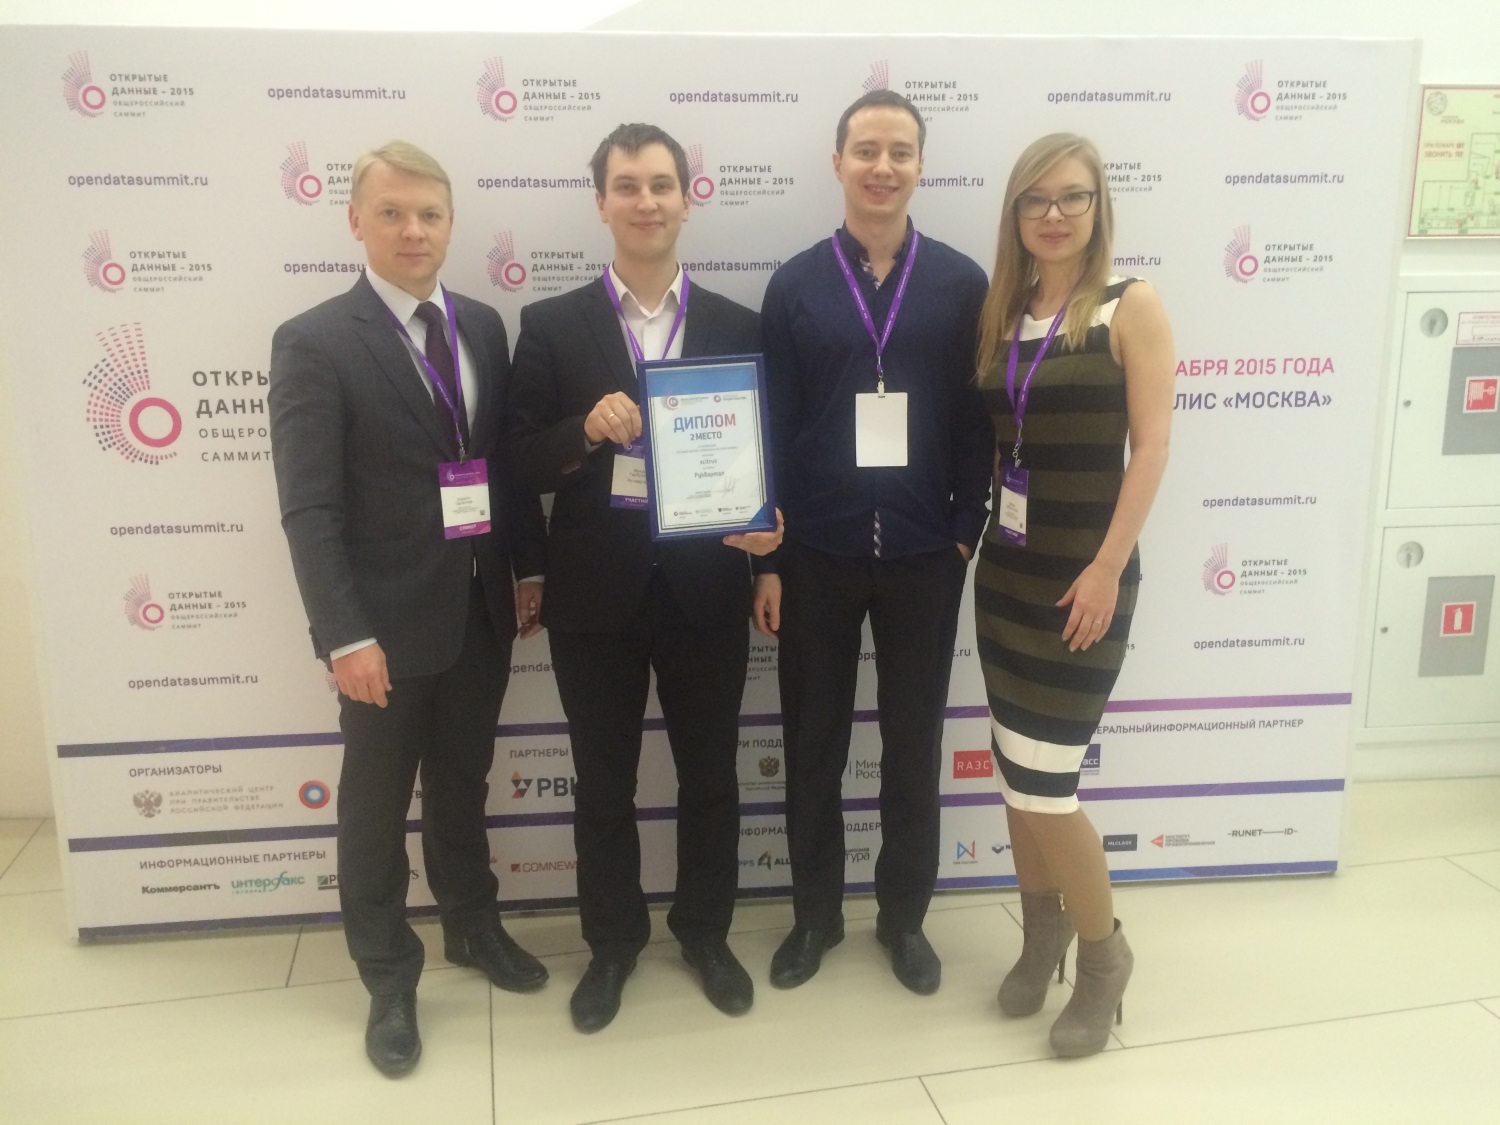 Пермские программисты вошли в число победителей конкурса  «Открытые данные Российской Федерации»